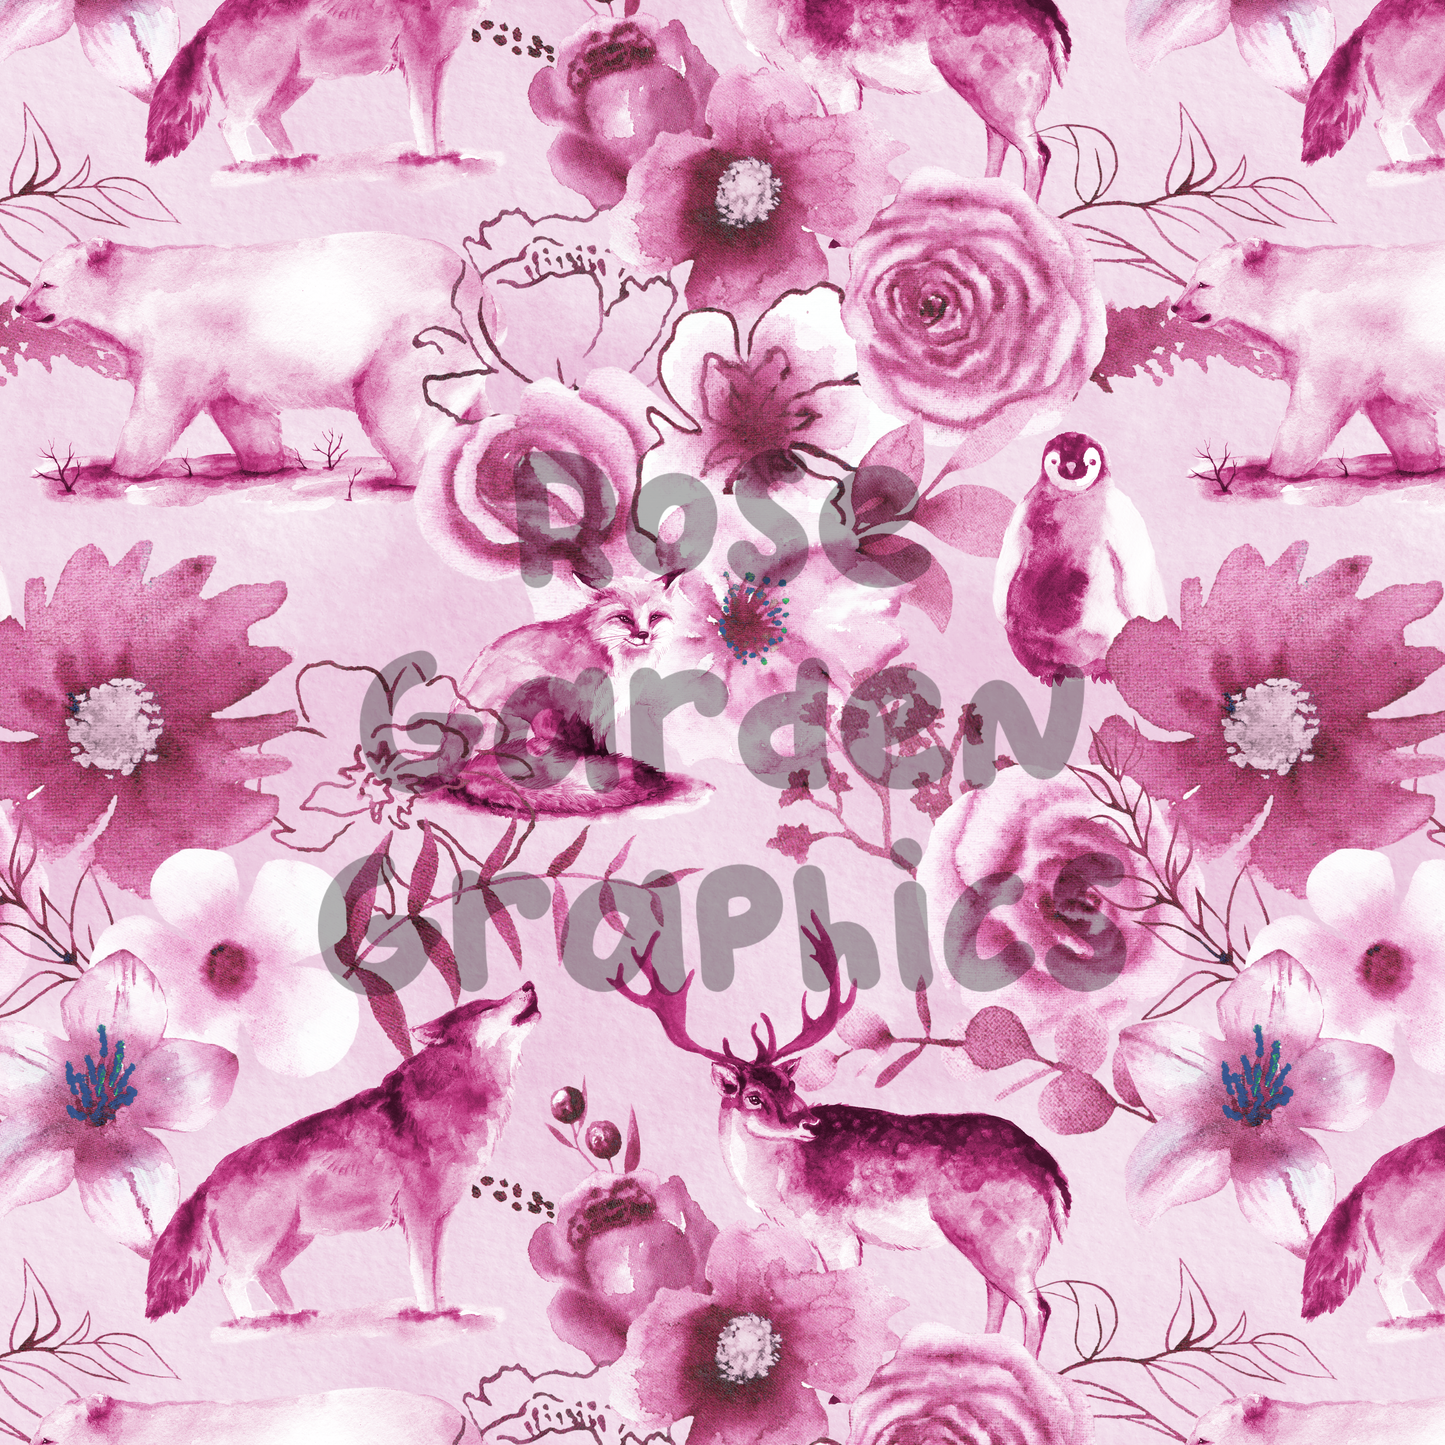 Imagen perfecta de animales de invierno floral (rosa)